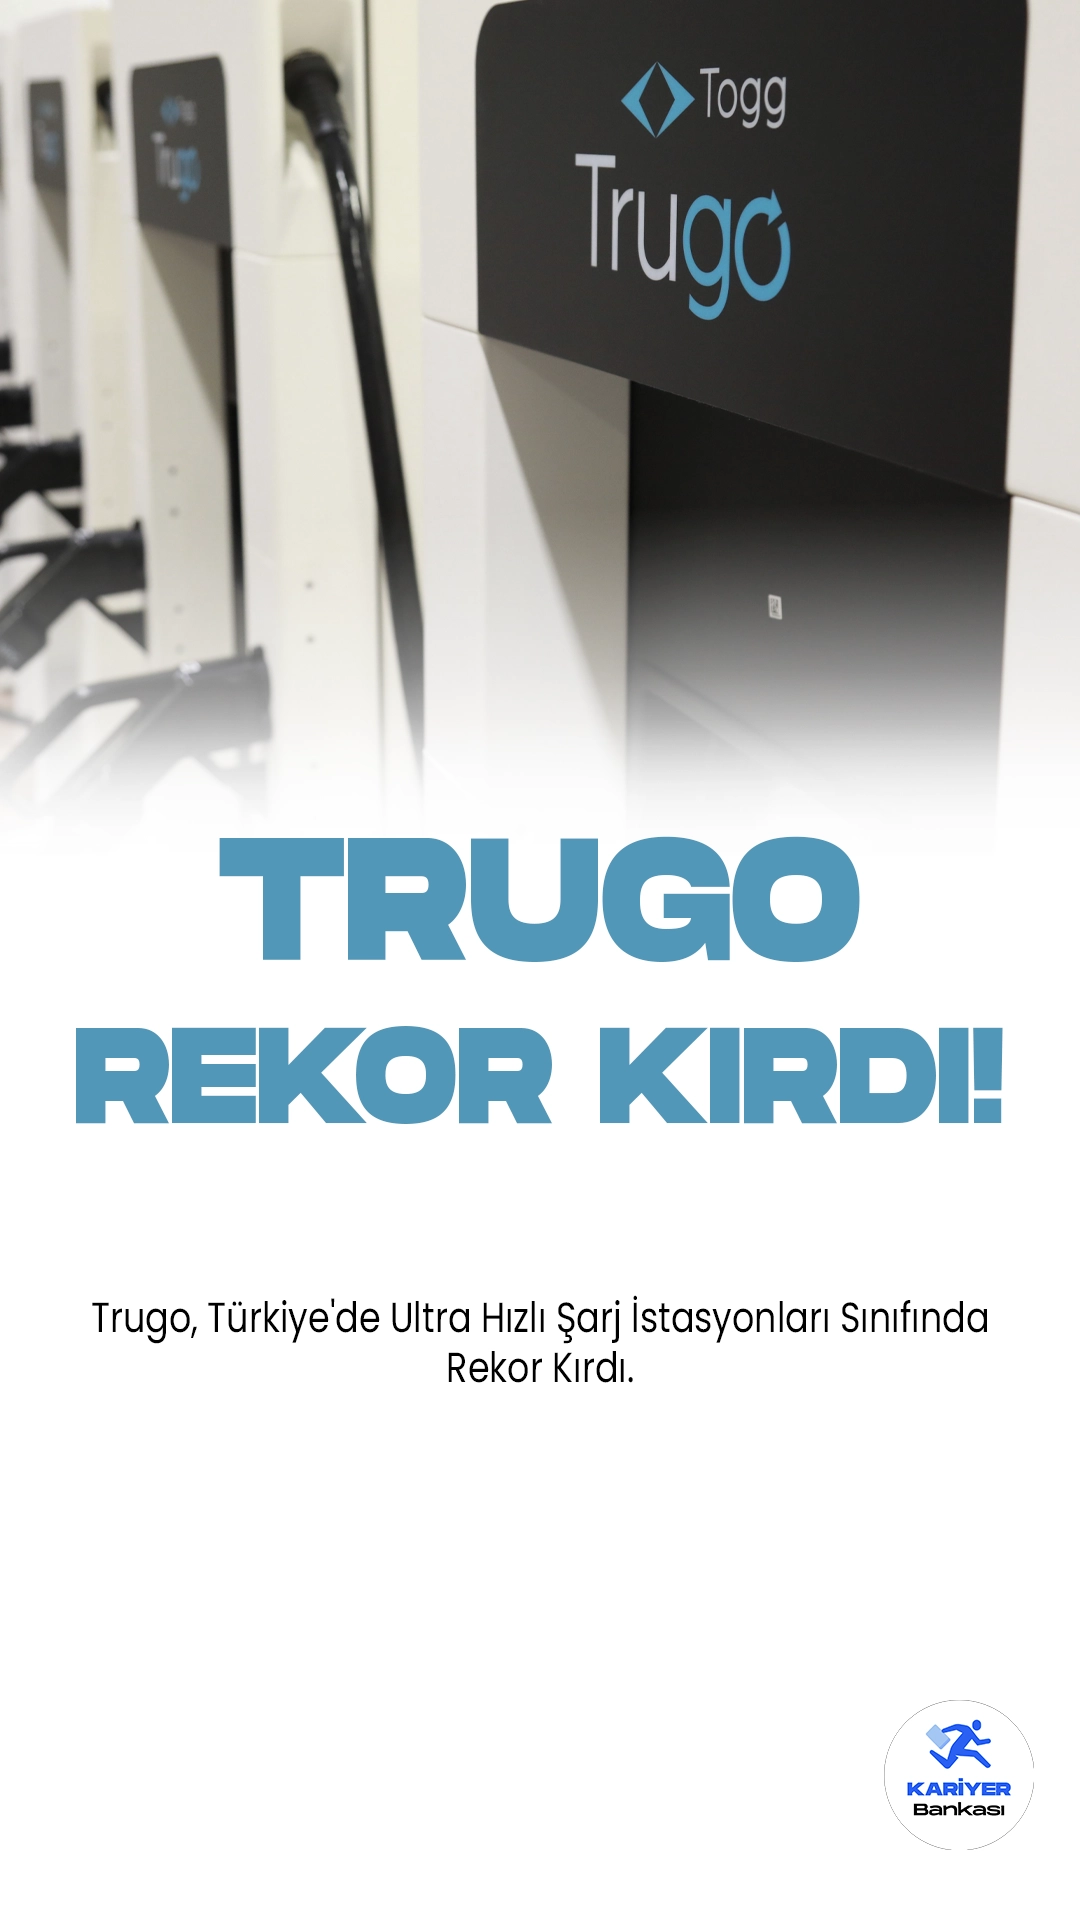 Trugo, Türkiye'de Ultra Hızlı Şarj İstasyonları Sınıfında Rekor Kırdı.Türkiye'nin en geniş kapsamlı ve yüksek performanslı şarj ağı olan Trugo, 150 kW ve üzeri ultra hızlı şarj istasyonları sınıfında en fazla ilde hizmet veren ve en yüksek sayıda cihaza sahip şirket unvanını elde etti.